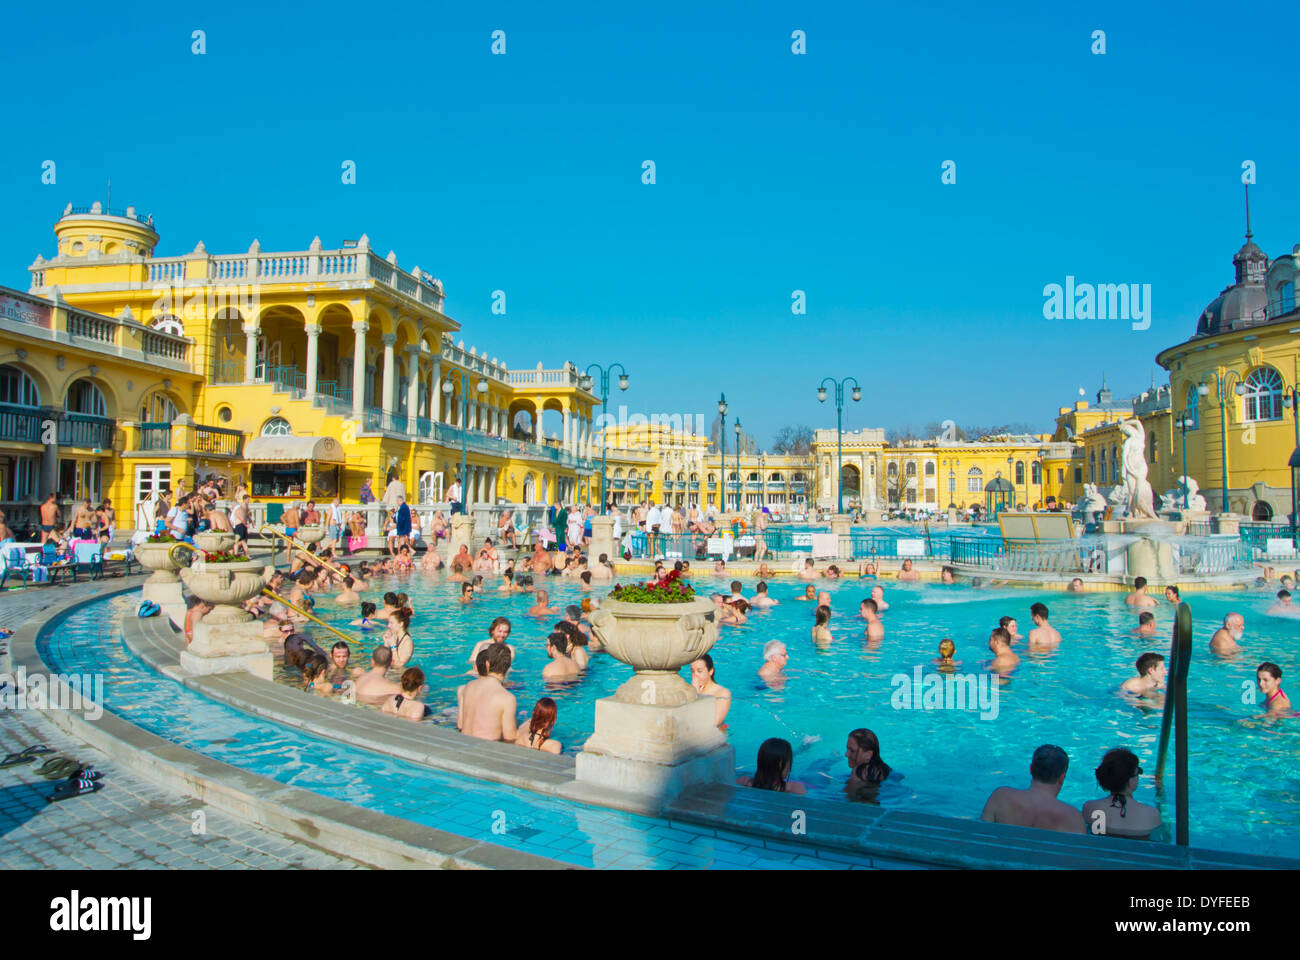 Piscine thermale de plein air, baignoire furdo Szechenyi, parc Varosliget la ville, Budapest, Hongrie, Europe Banque D'Images